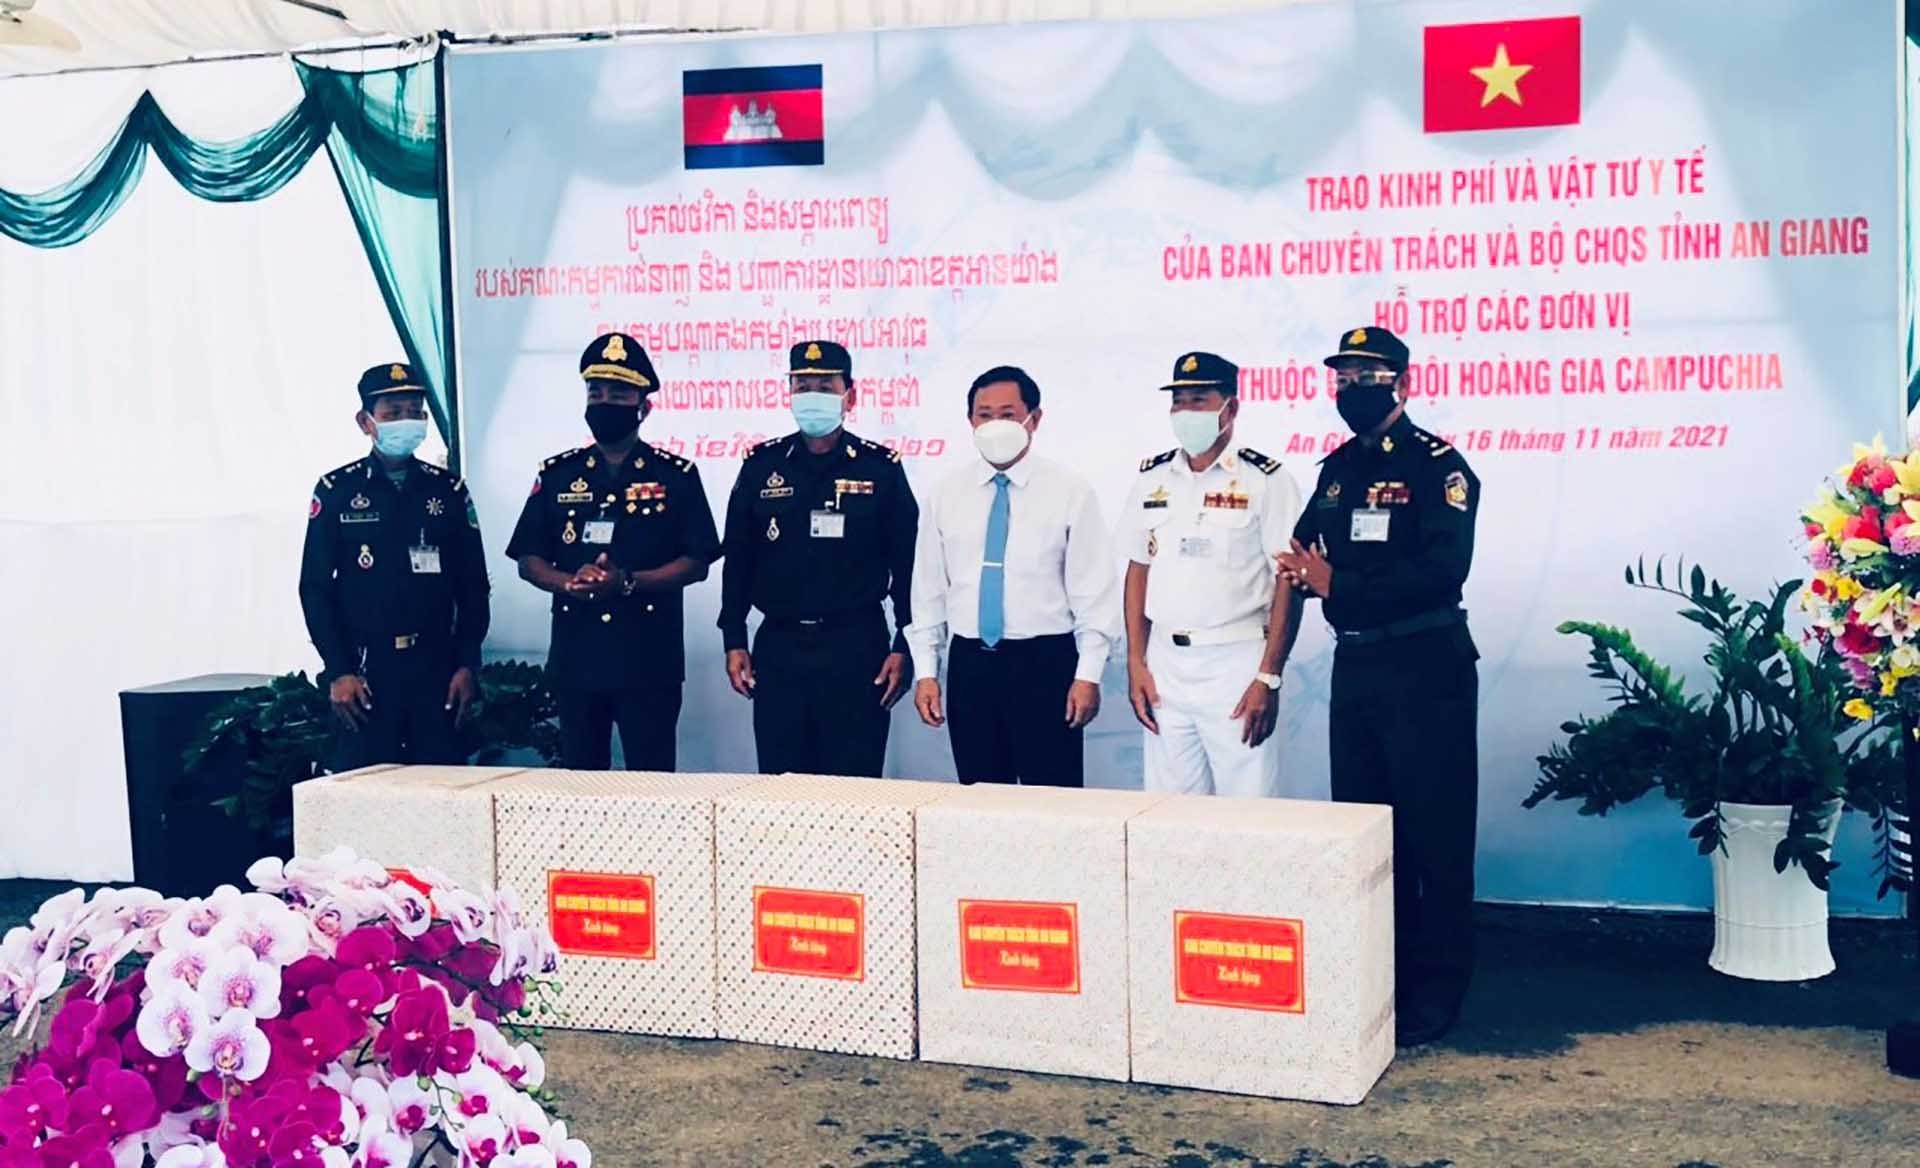 Ông Nguyễn Tiếc Hùng, Chủ tịch Ủy ban MTTQ Việt Nam tỉnh An Giang trao tặng vật tư y tế phòng, chống dịch Covid-19 cho lực lượng Bảo vệ biên giới Campuchia. (Ảnh: Chiến Khu)